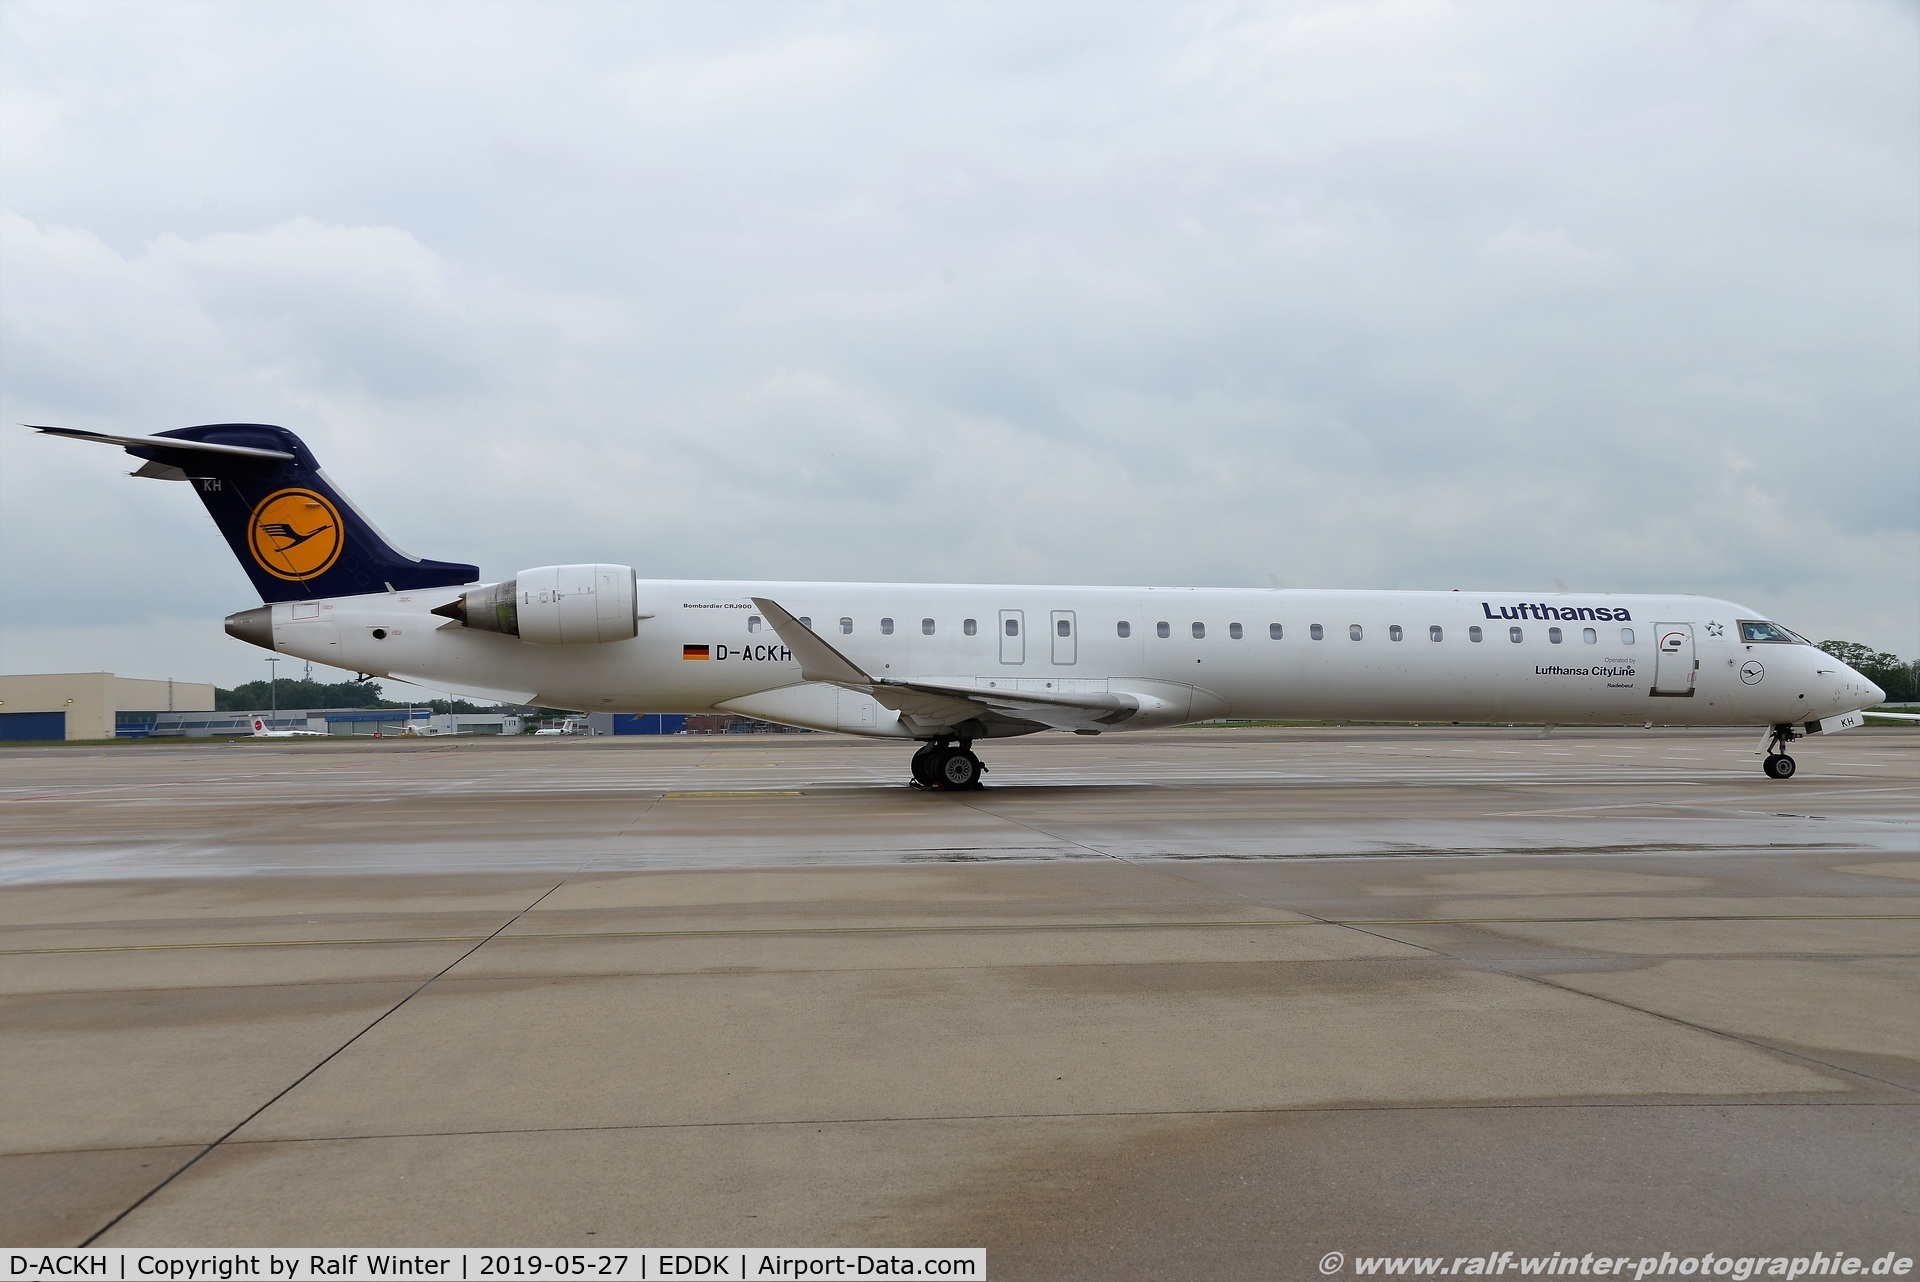 D-ACKH, 2006 Bombardier CRJ-900LR (CL-600-2D24) C/N 15085, Bombardier CL-600-2D24 CRJ-900LR - CL CLH Lufthansa CityLine 'Radebeul' - 15085 - D-ACKH - 27.05.2019 - CGN